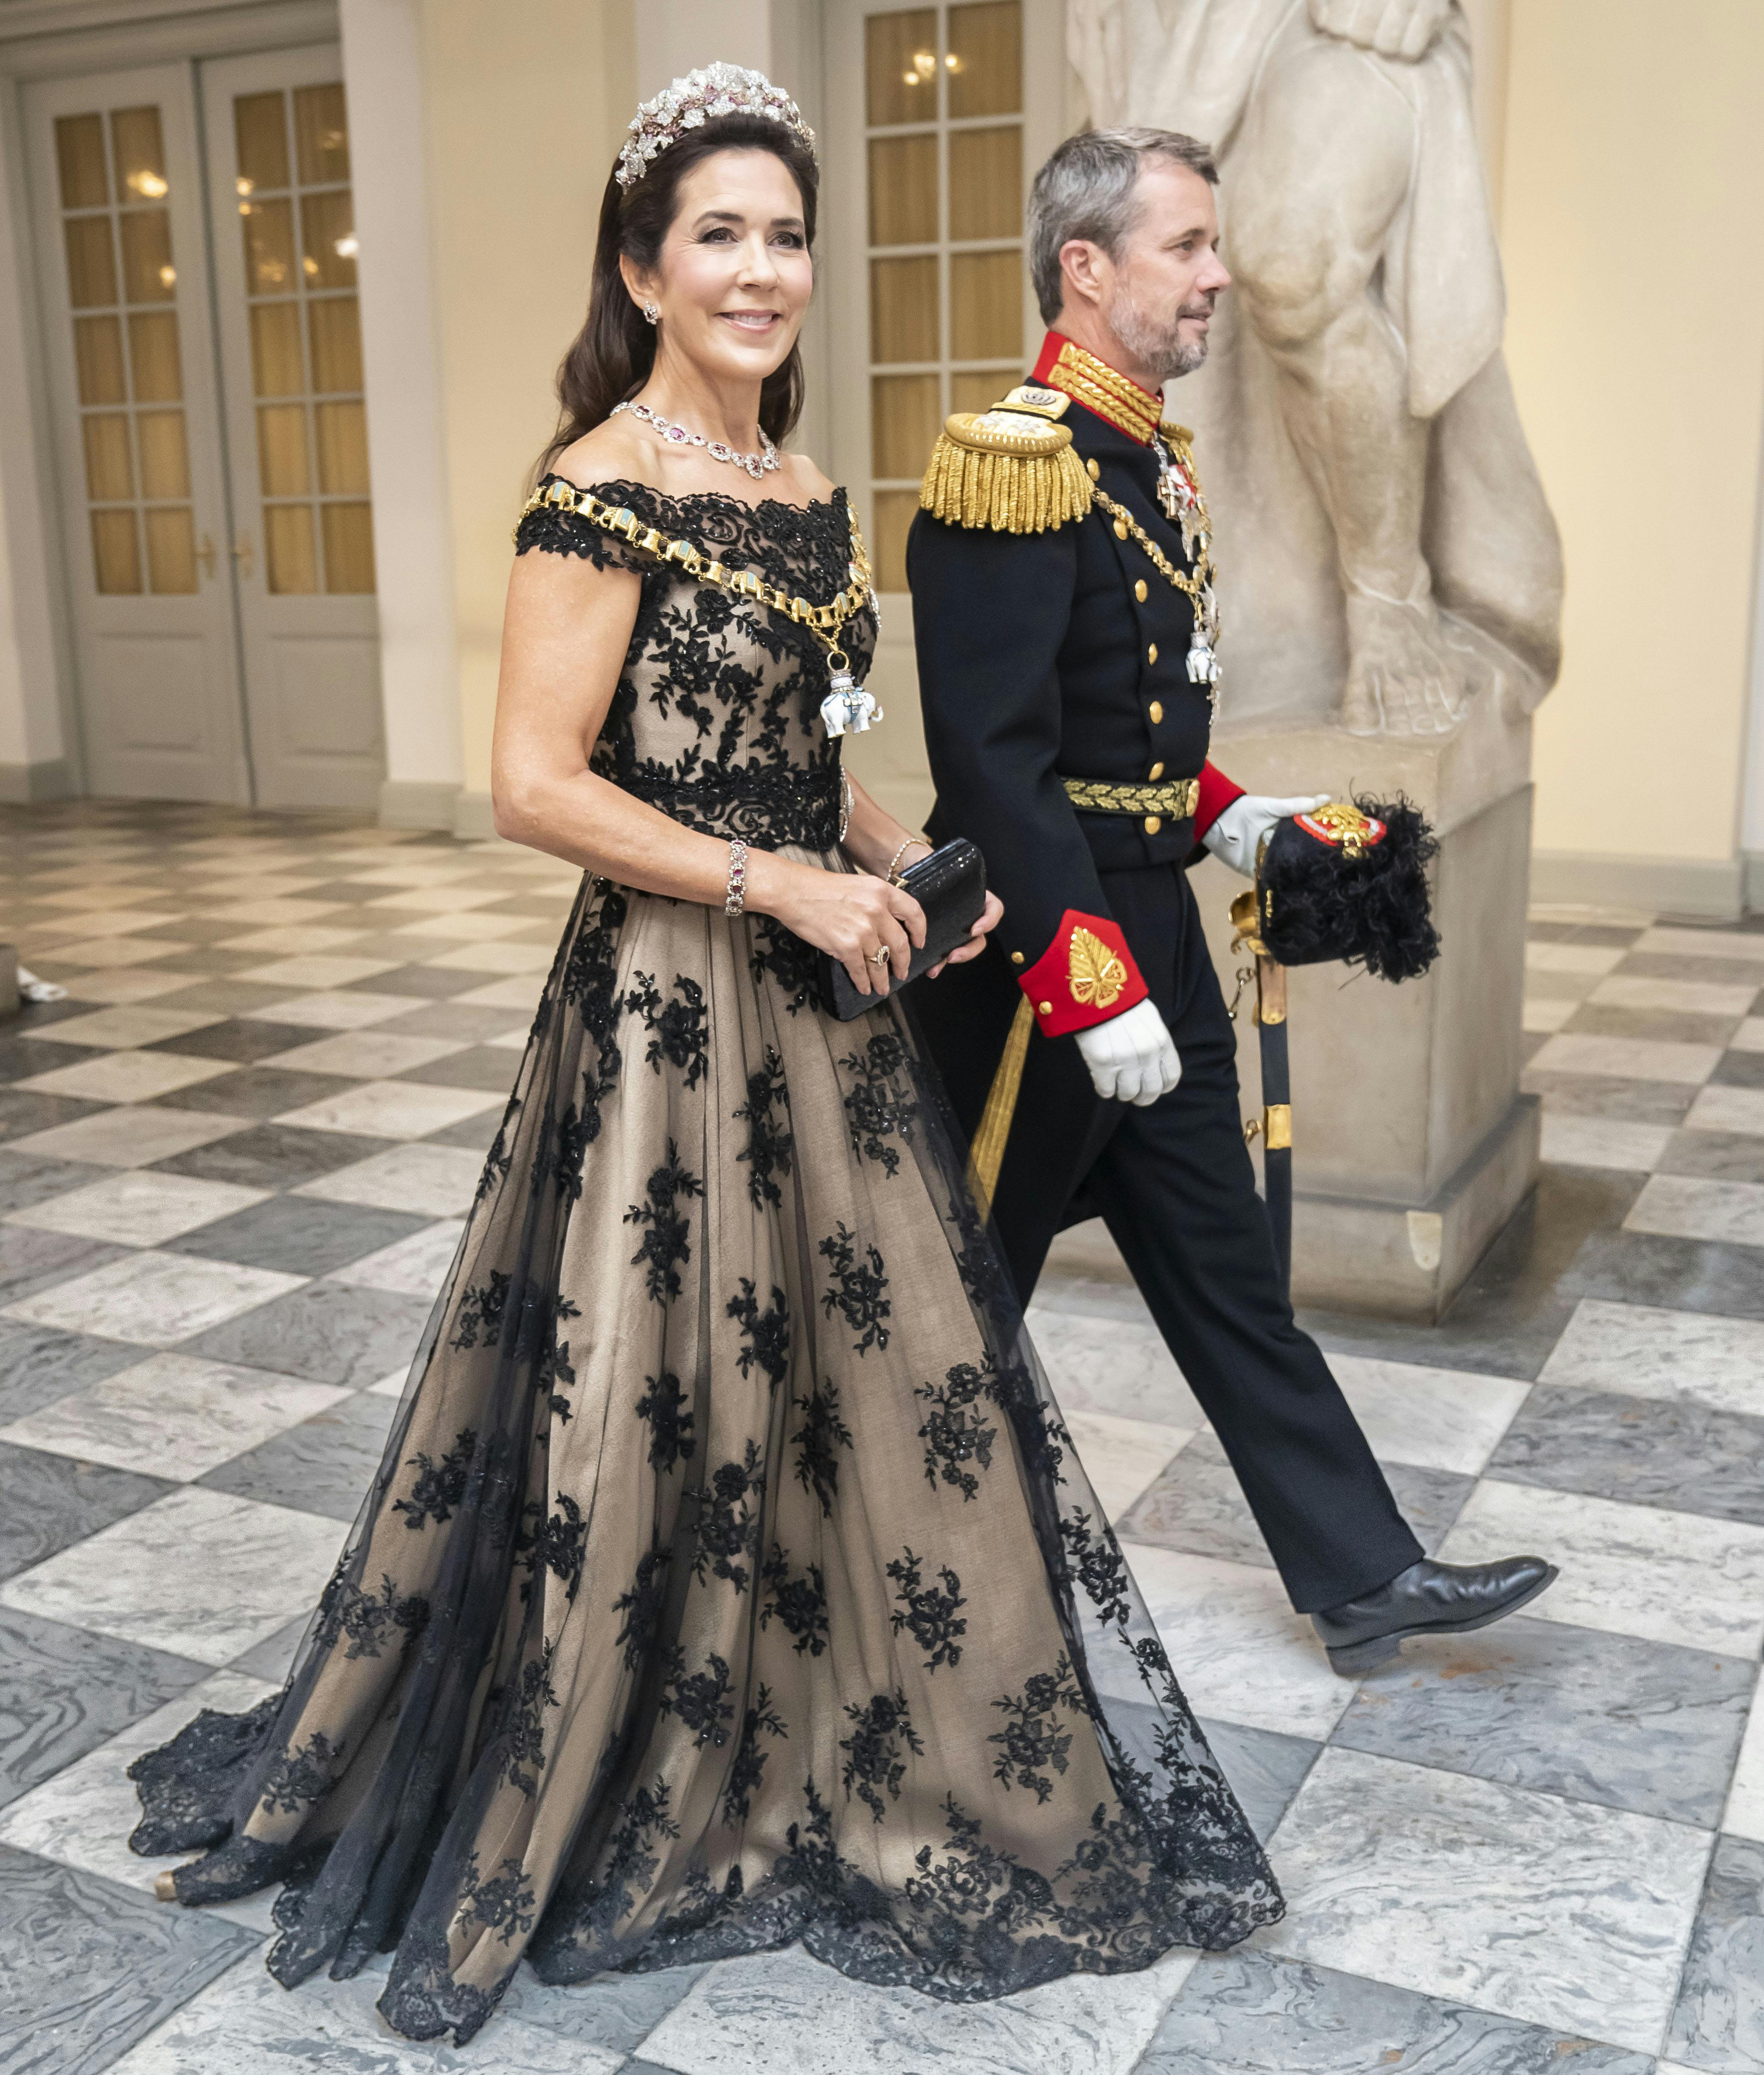 Her er kronprinsesse Mary og kronprins Frederik fotograferet i forbindelse med dronning Margrethes gallataffel.&nbsp;
